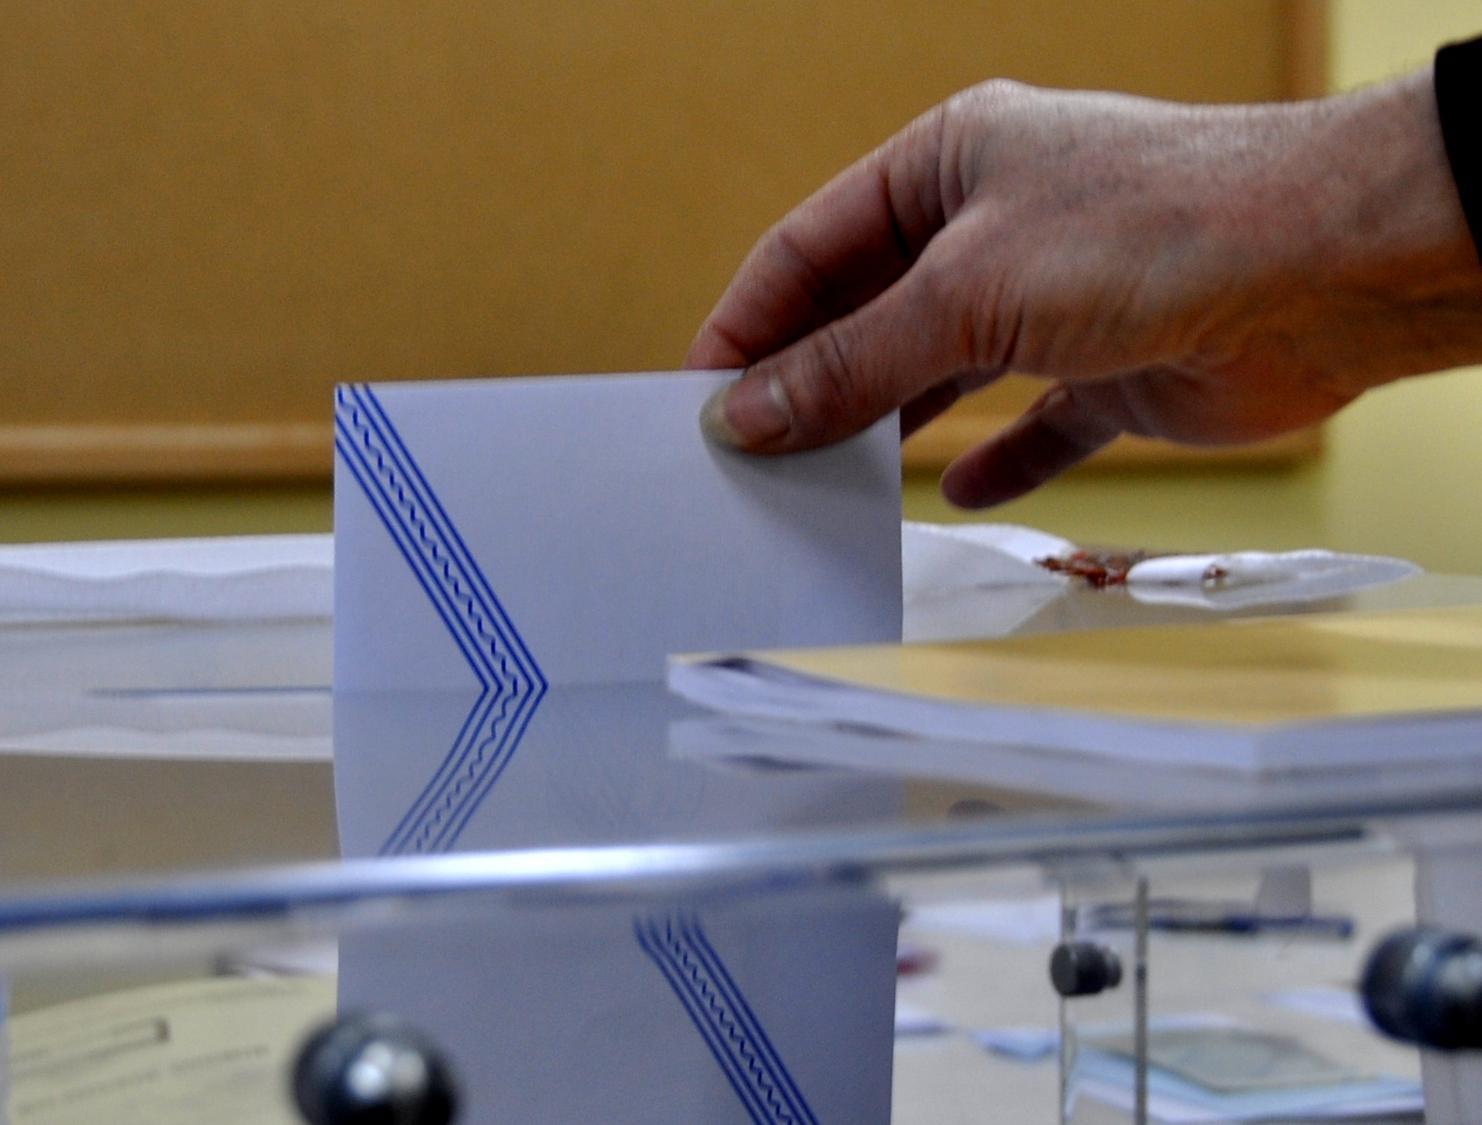 Βουλευτικές Εκλογές 2019: Οι σταυροί που μπαίνουν στα ψηφοδέλτια ανά εκλογική περιφέρεια